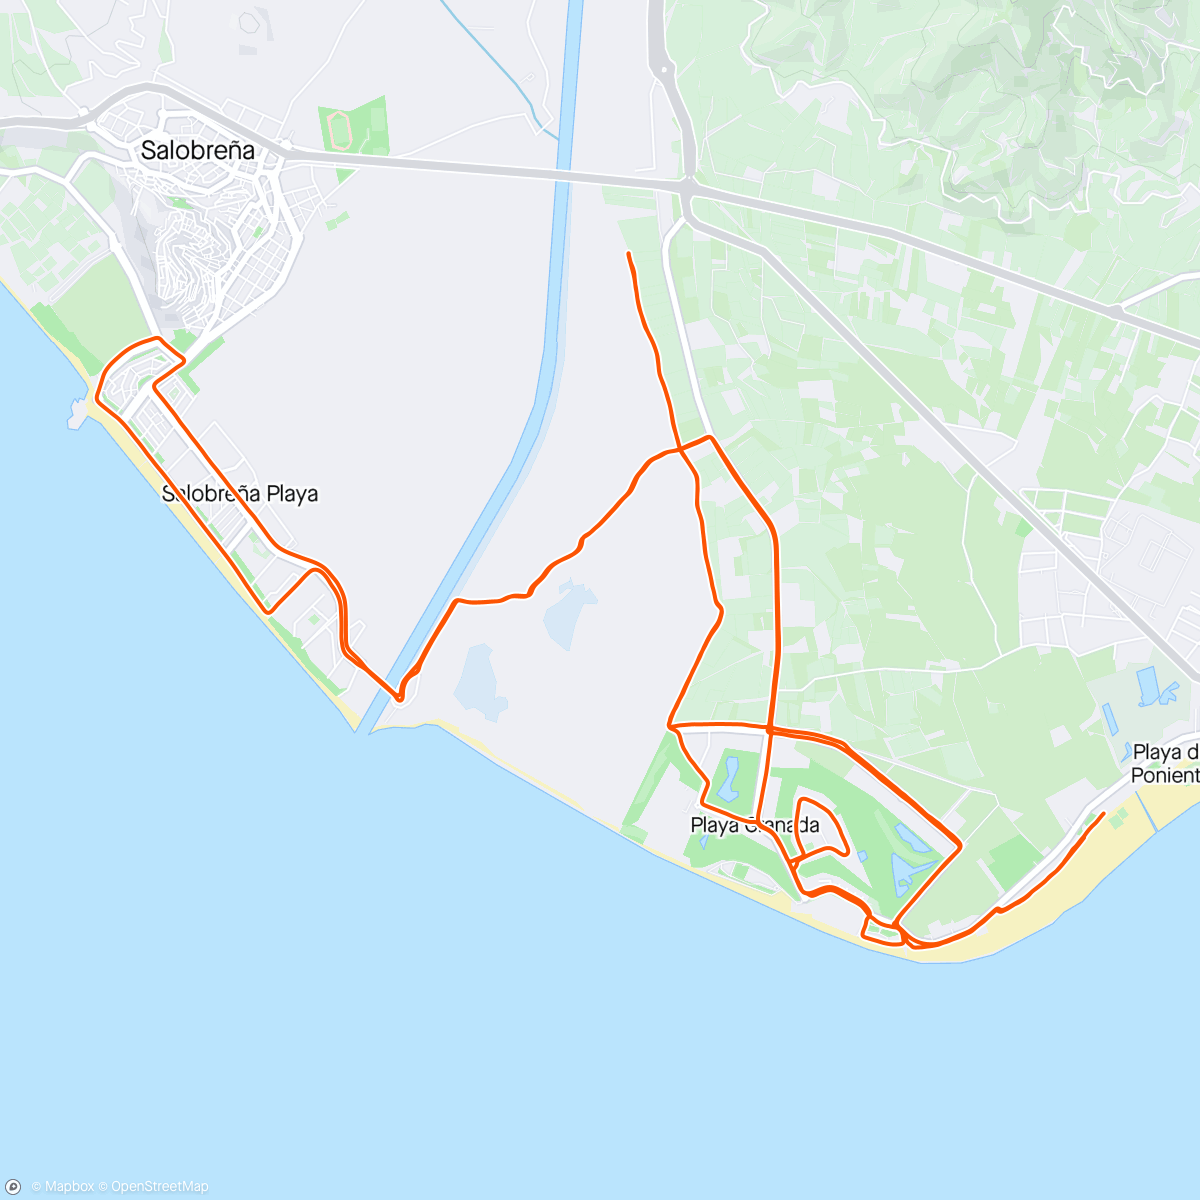 「10k 🚴🏽‍♀️🏃🏽+ 15k🚴🏽‍♀️ Salobreña」活動的地圖